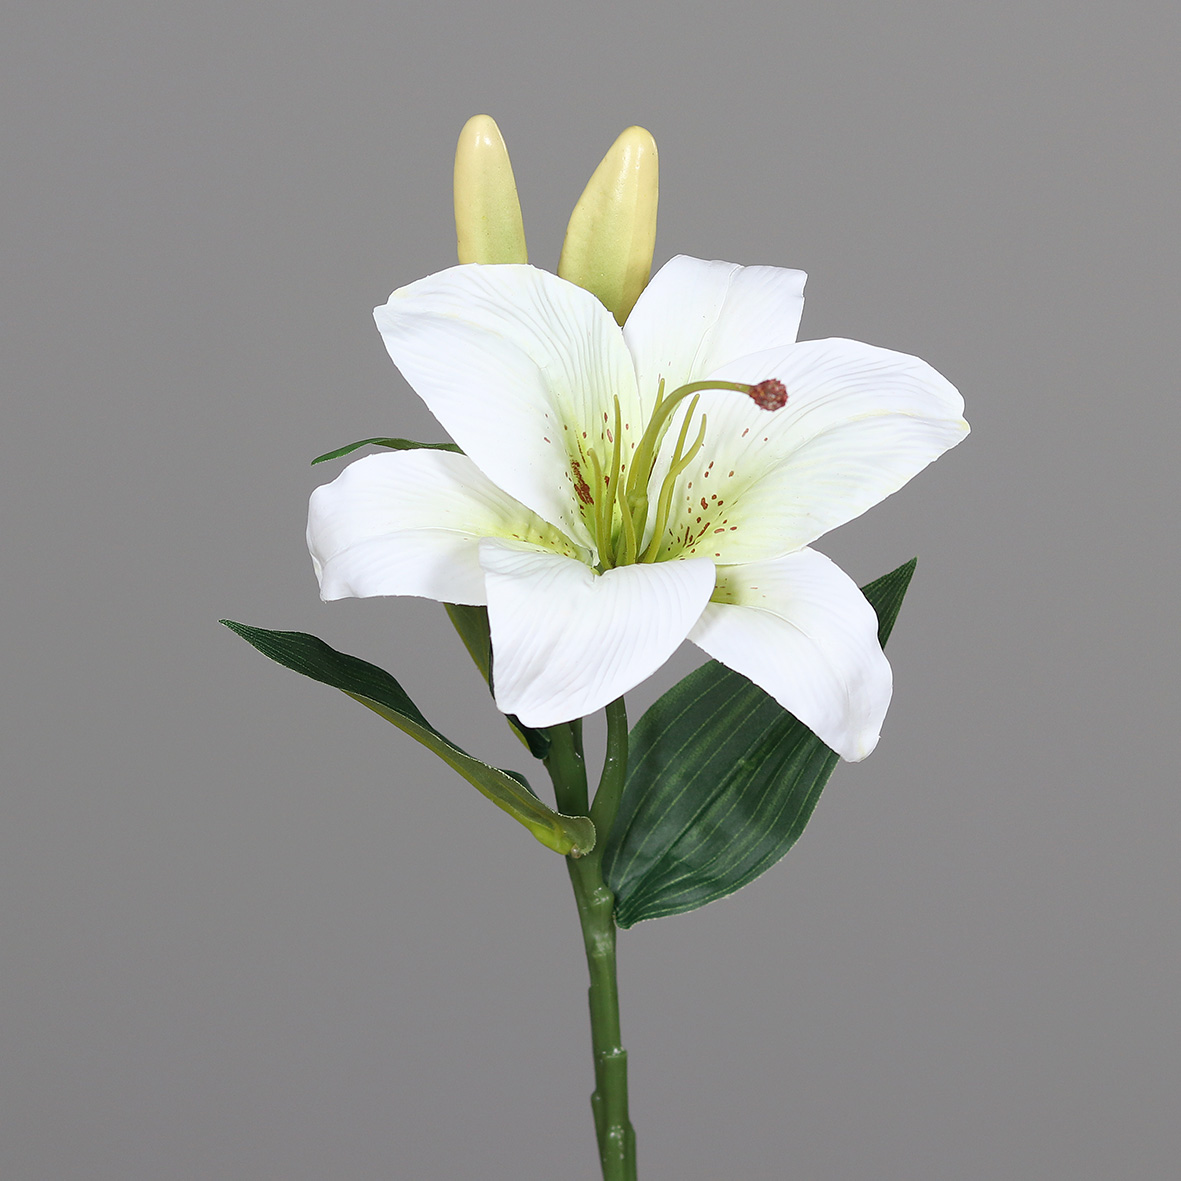 Lilie / Tigerlilie Real Touch 36cm weiß DP Kunstblumen künstliche Blumen künstlicher Lilienzweig